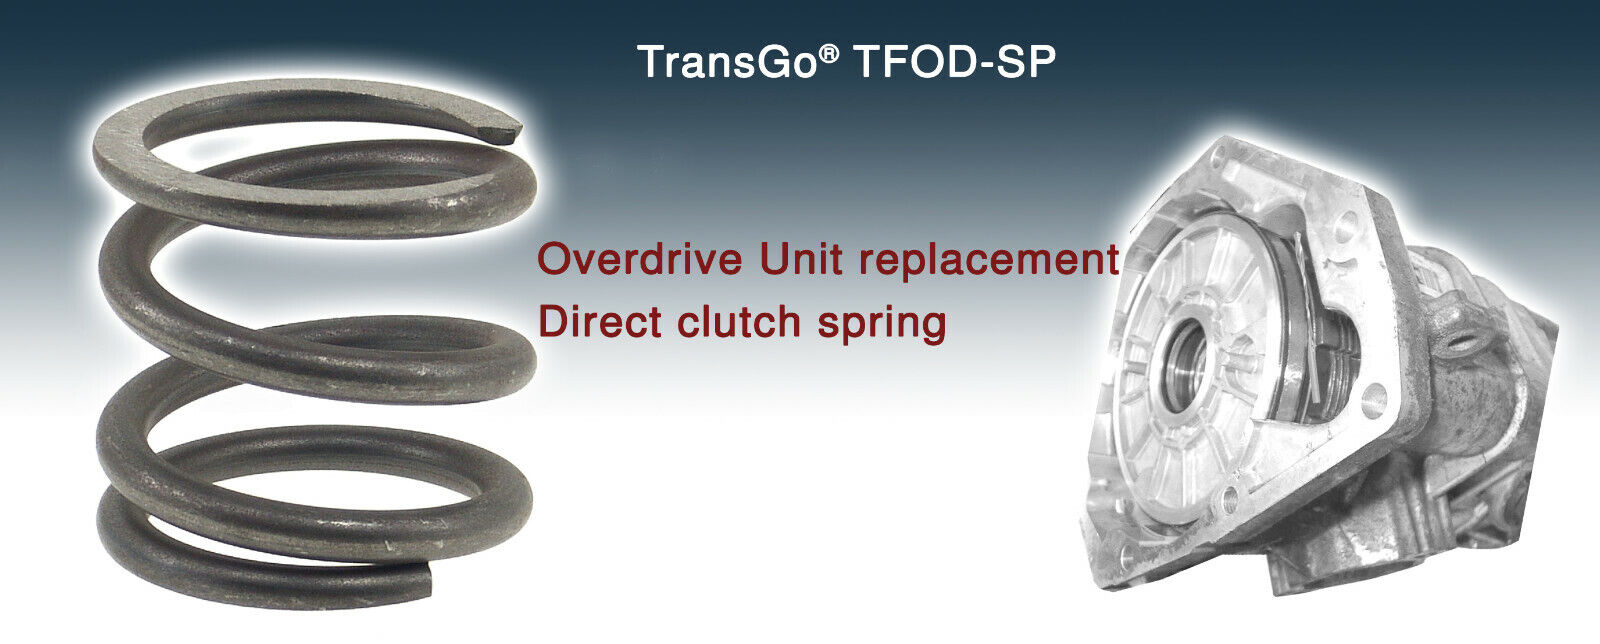 Transgo A500/518/618 Overdrive Spring High-Temp HD ÃƒÂ¢Ã¢â€šÂ¬Ã¢â€žÂ¢88-04 TFOD-SP